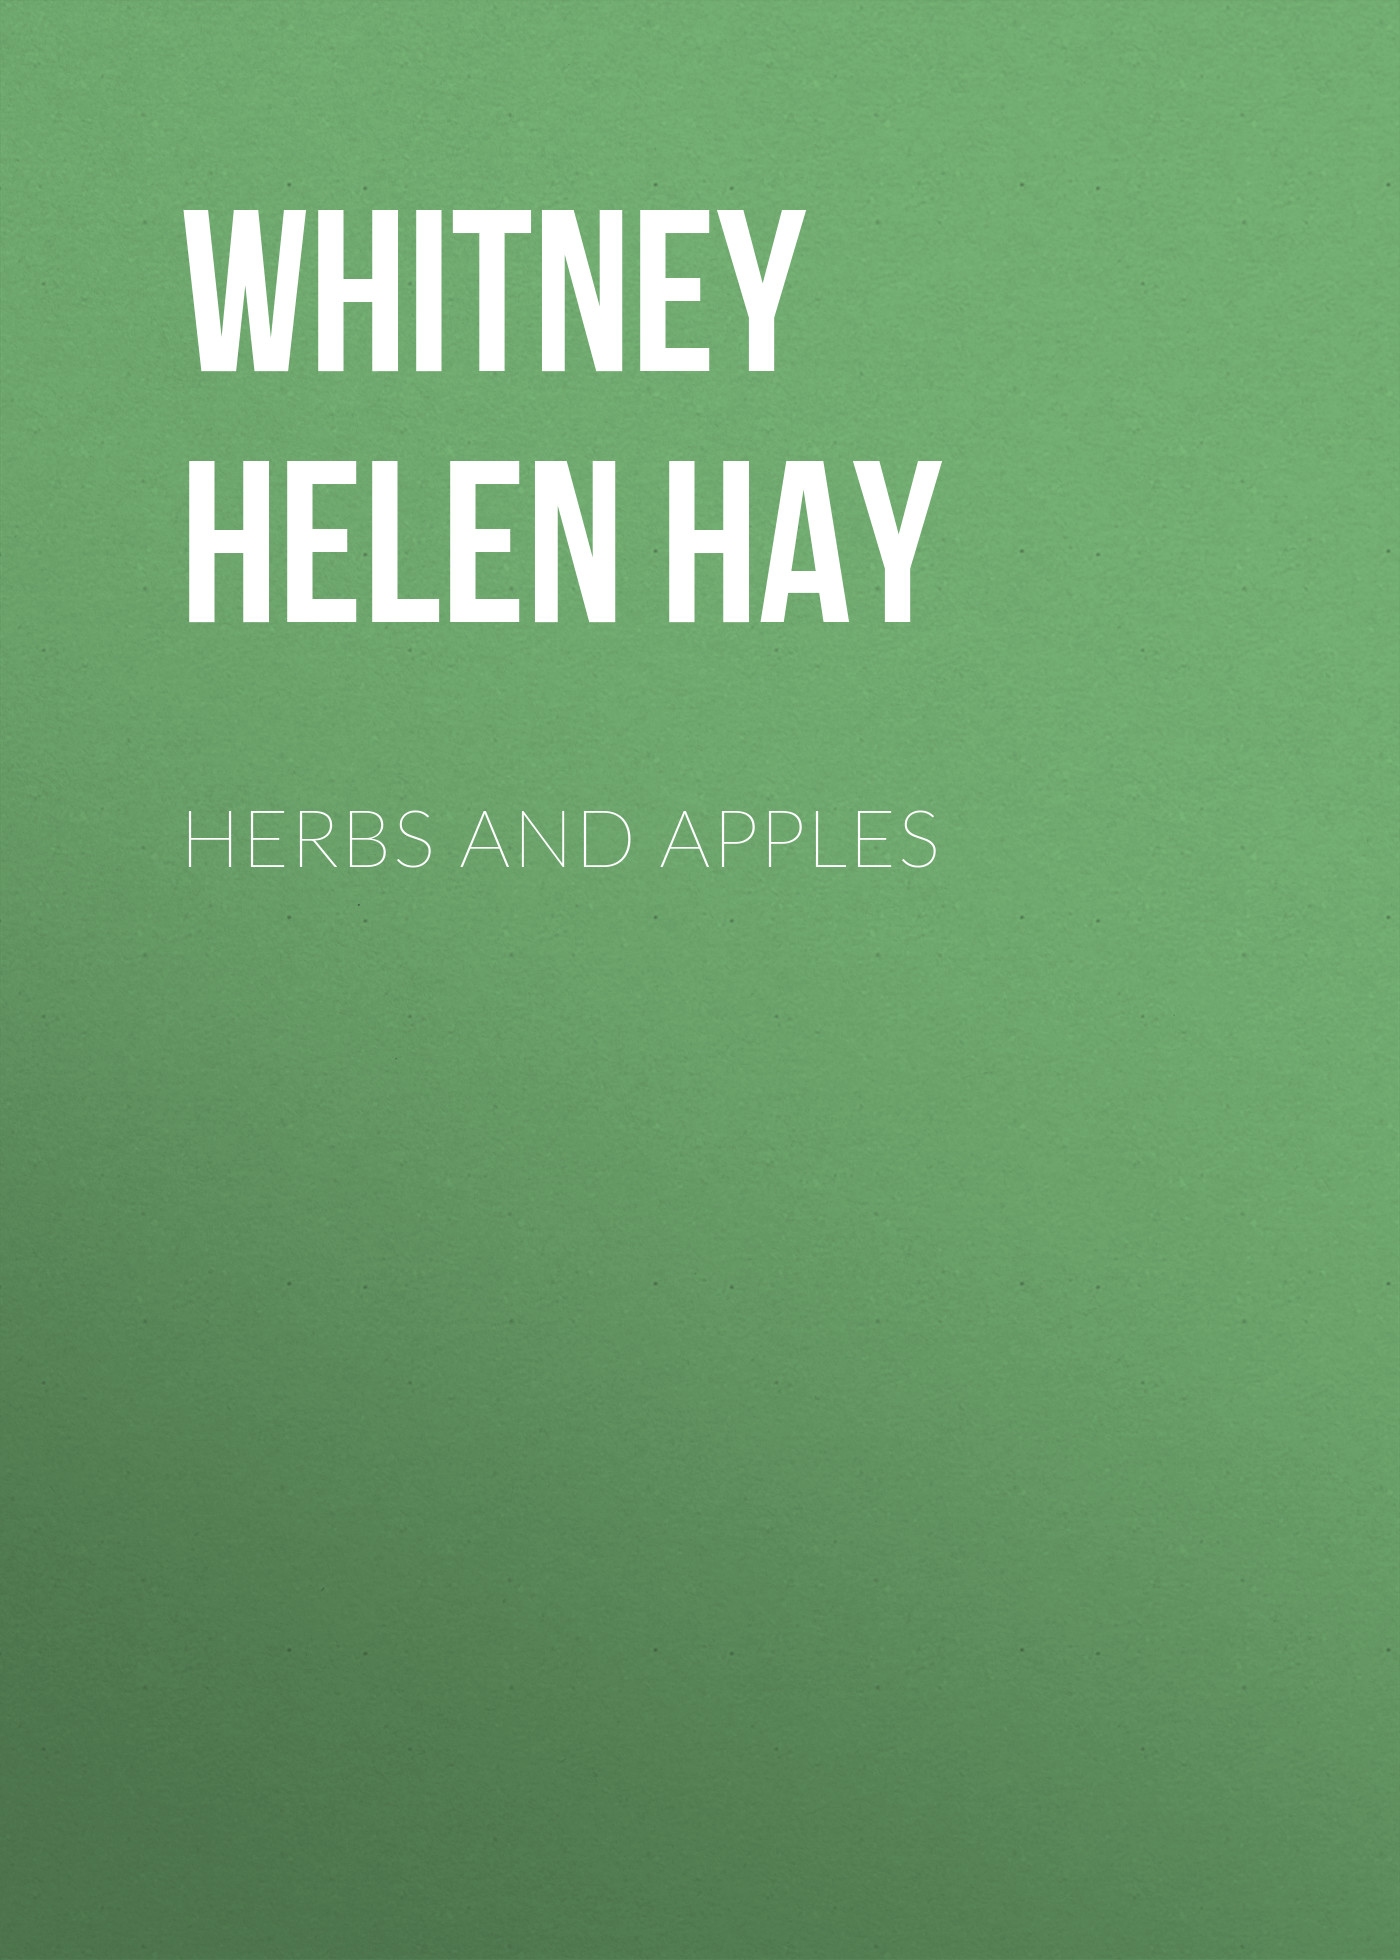 Книга Herbs and Apples из серии , созданная Helen Whitney, может относится к жанру Зарубежные стихи, Поэзия, Зарубежная старинная литература, Зарубежная классика. Стоимость электронной книги Herbs and Apples с идентификатором 34336890 составляет 0 руб.